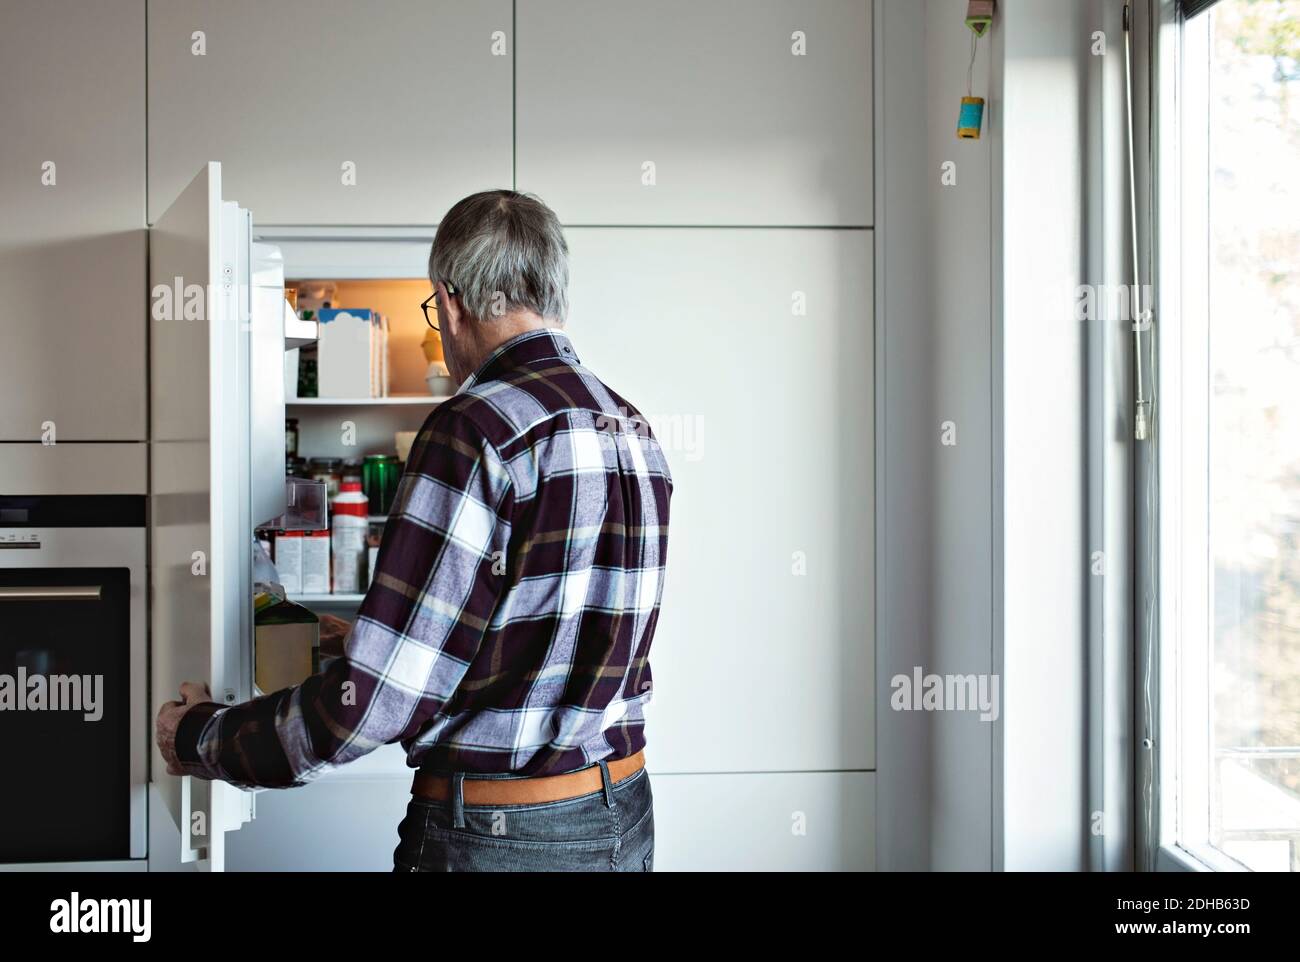 Rückansicht eines älteren Mannes im Ruhestand, der am offenen Kühlschrank stand Tür in der Küche zu Hause Stockfoto